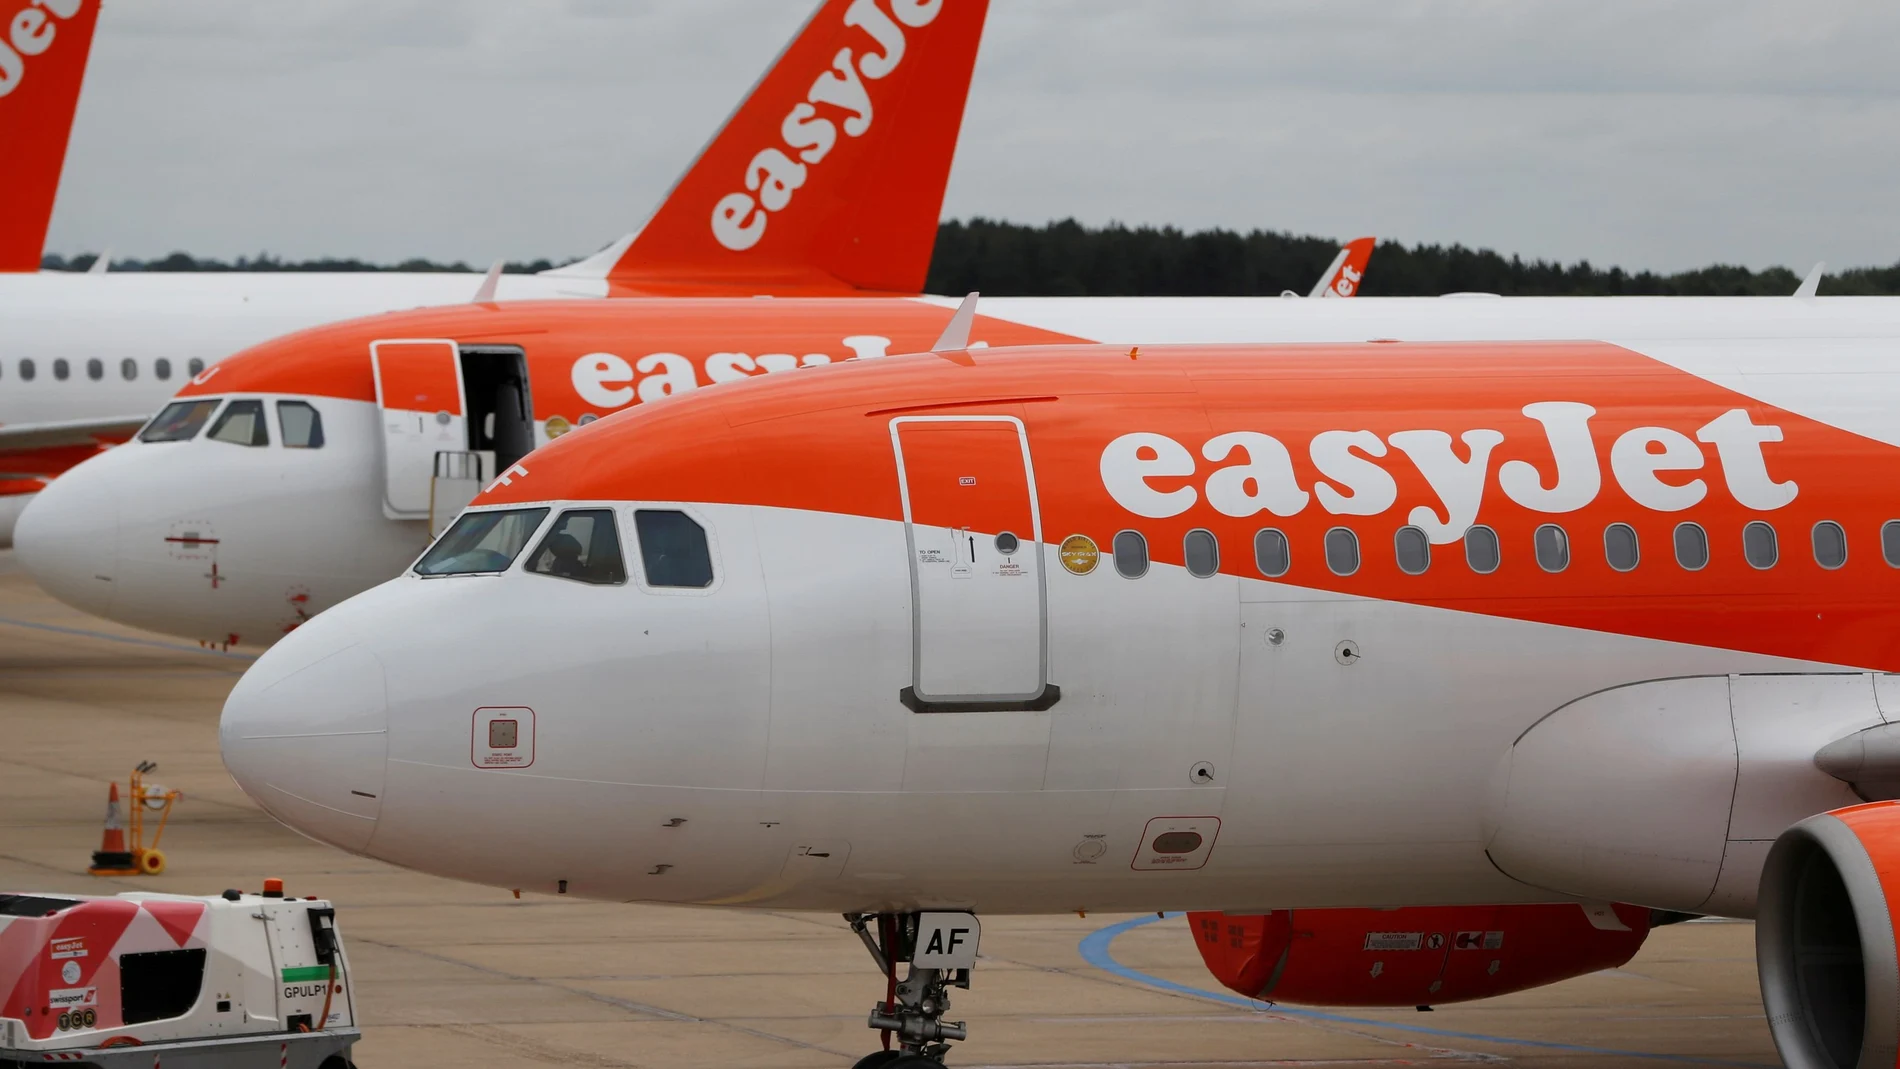 Aviones de easyJet en el aeropuerto londinense de Luton